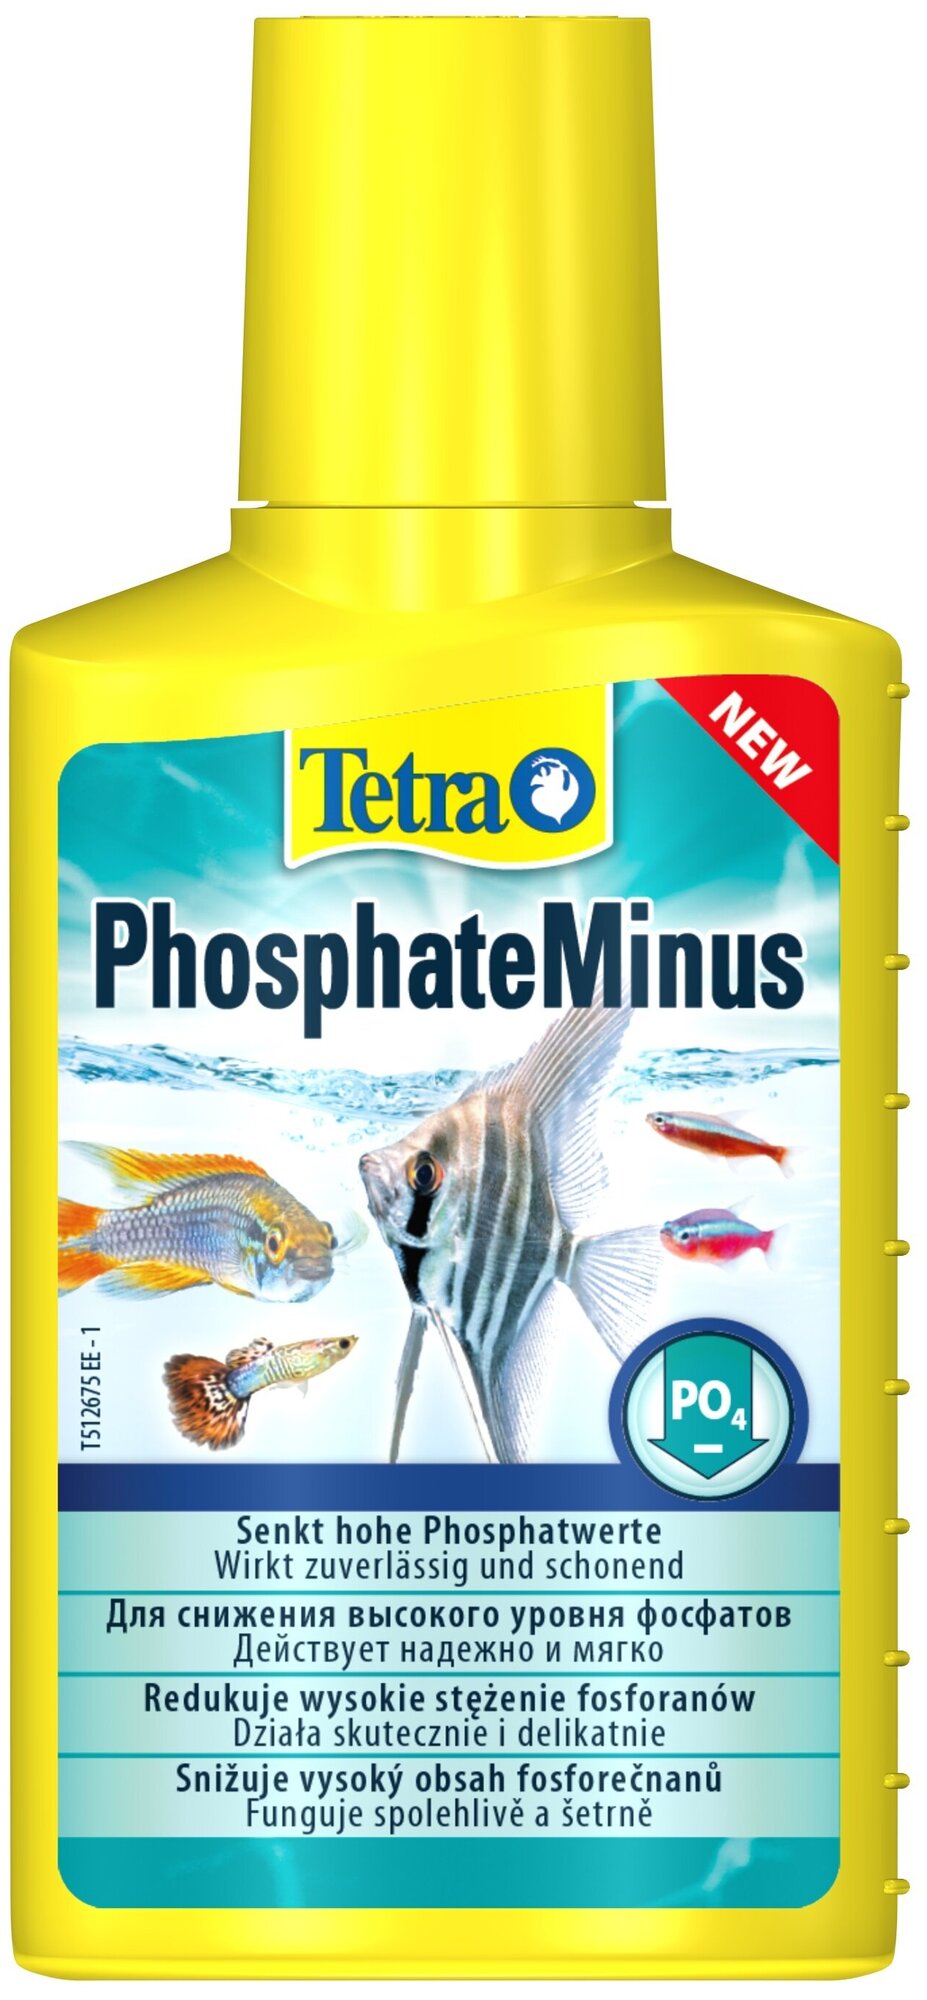 Кондиционер Tetra PhosphateMinus 100мл для снижения высокого уровня фосфатов в аквариумной воде, на 400л воды